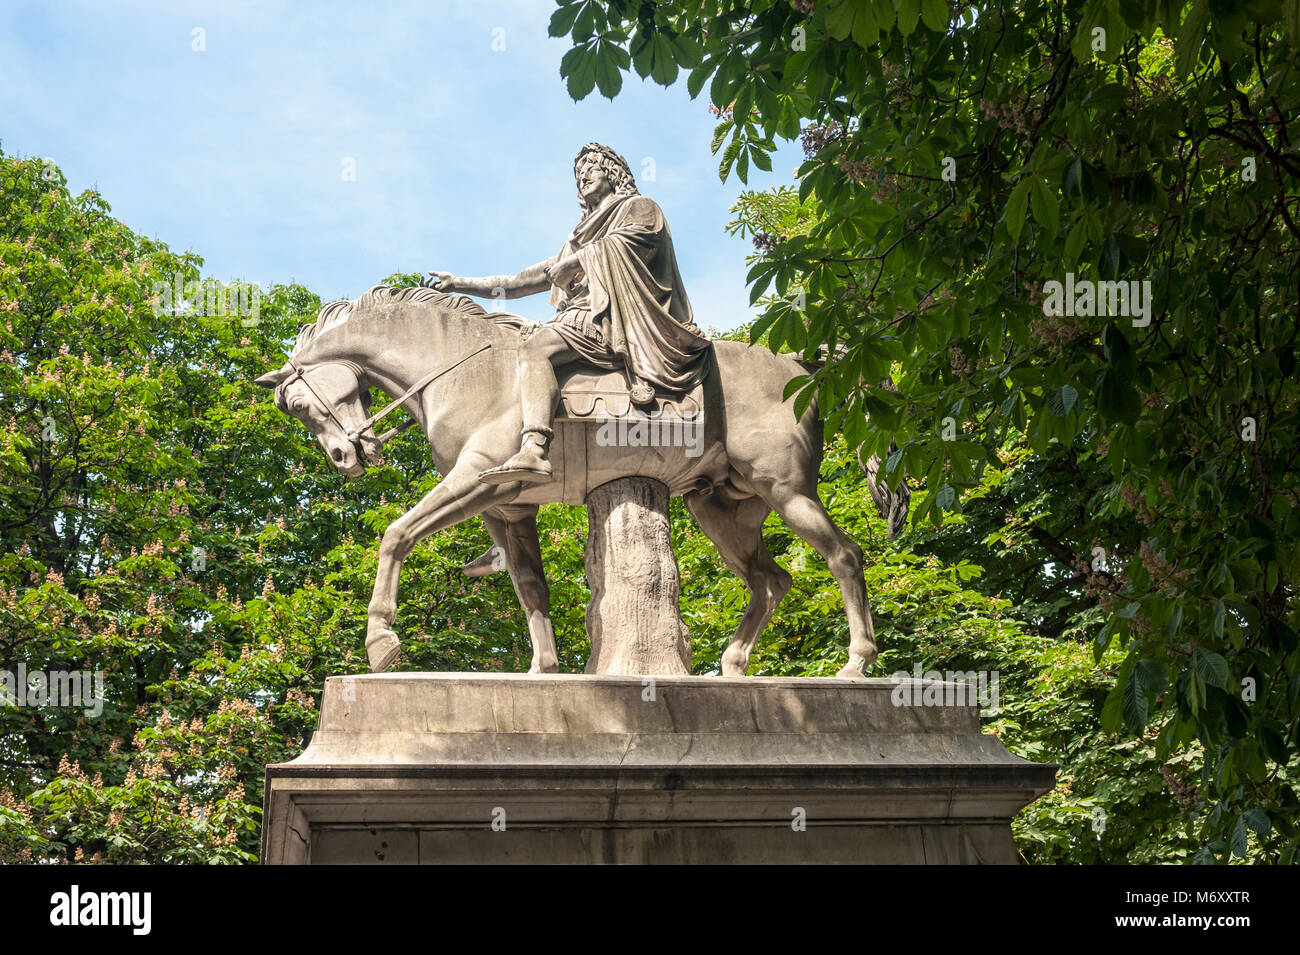 PARIS, FRANKREICH - 06. MAI 2011: Reiterstatue von Ludwig XIII. Auf dem Place des Vosges Stockfoto